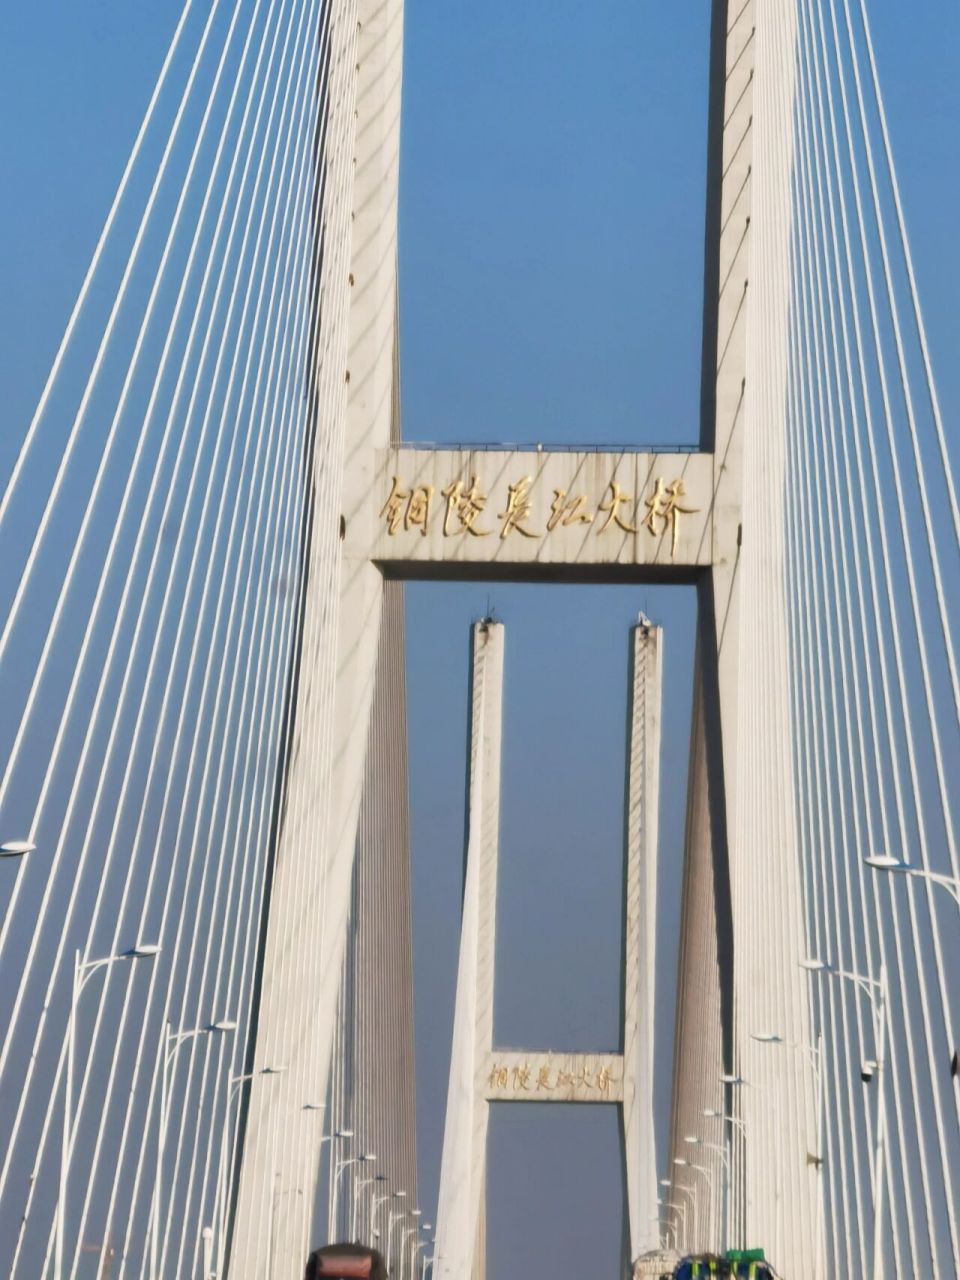 铜陵长江大桥简介图片